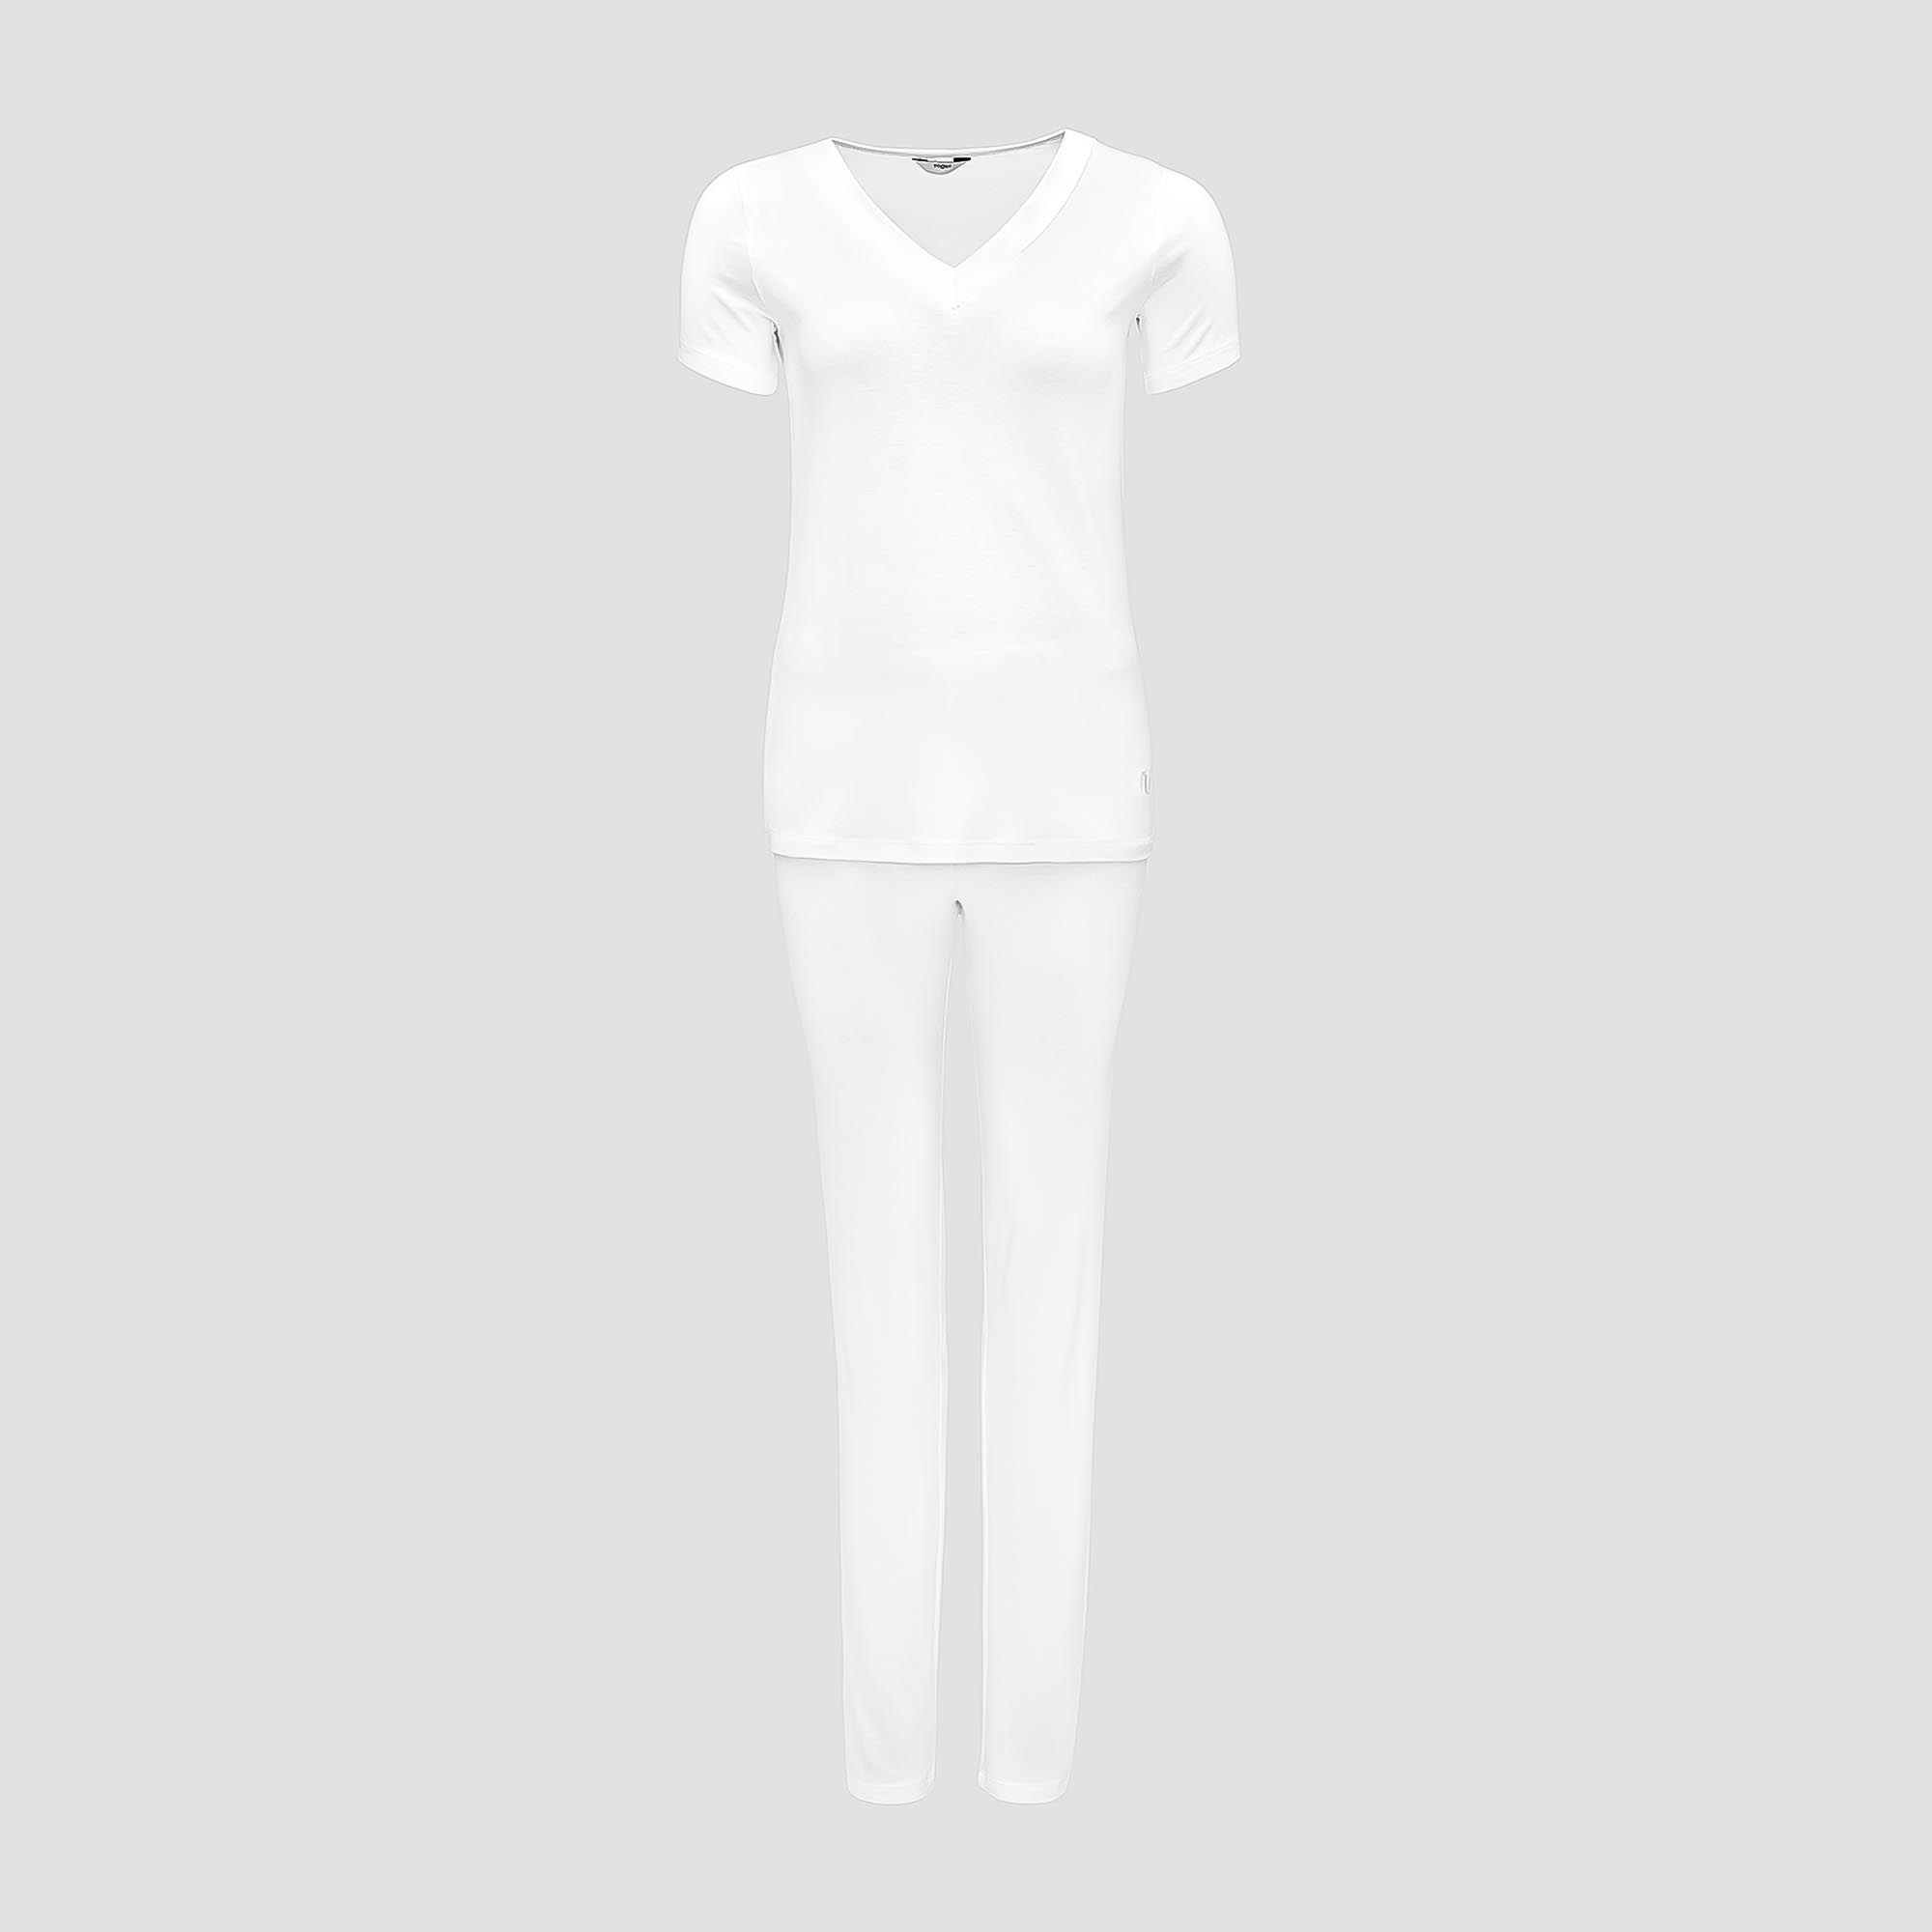 Пижама Togas Ингелла белая женская XXL(52) 2 предмета пижама сорочка брюки